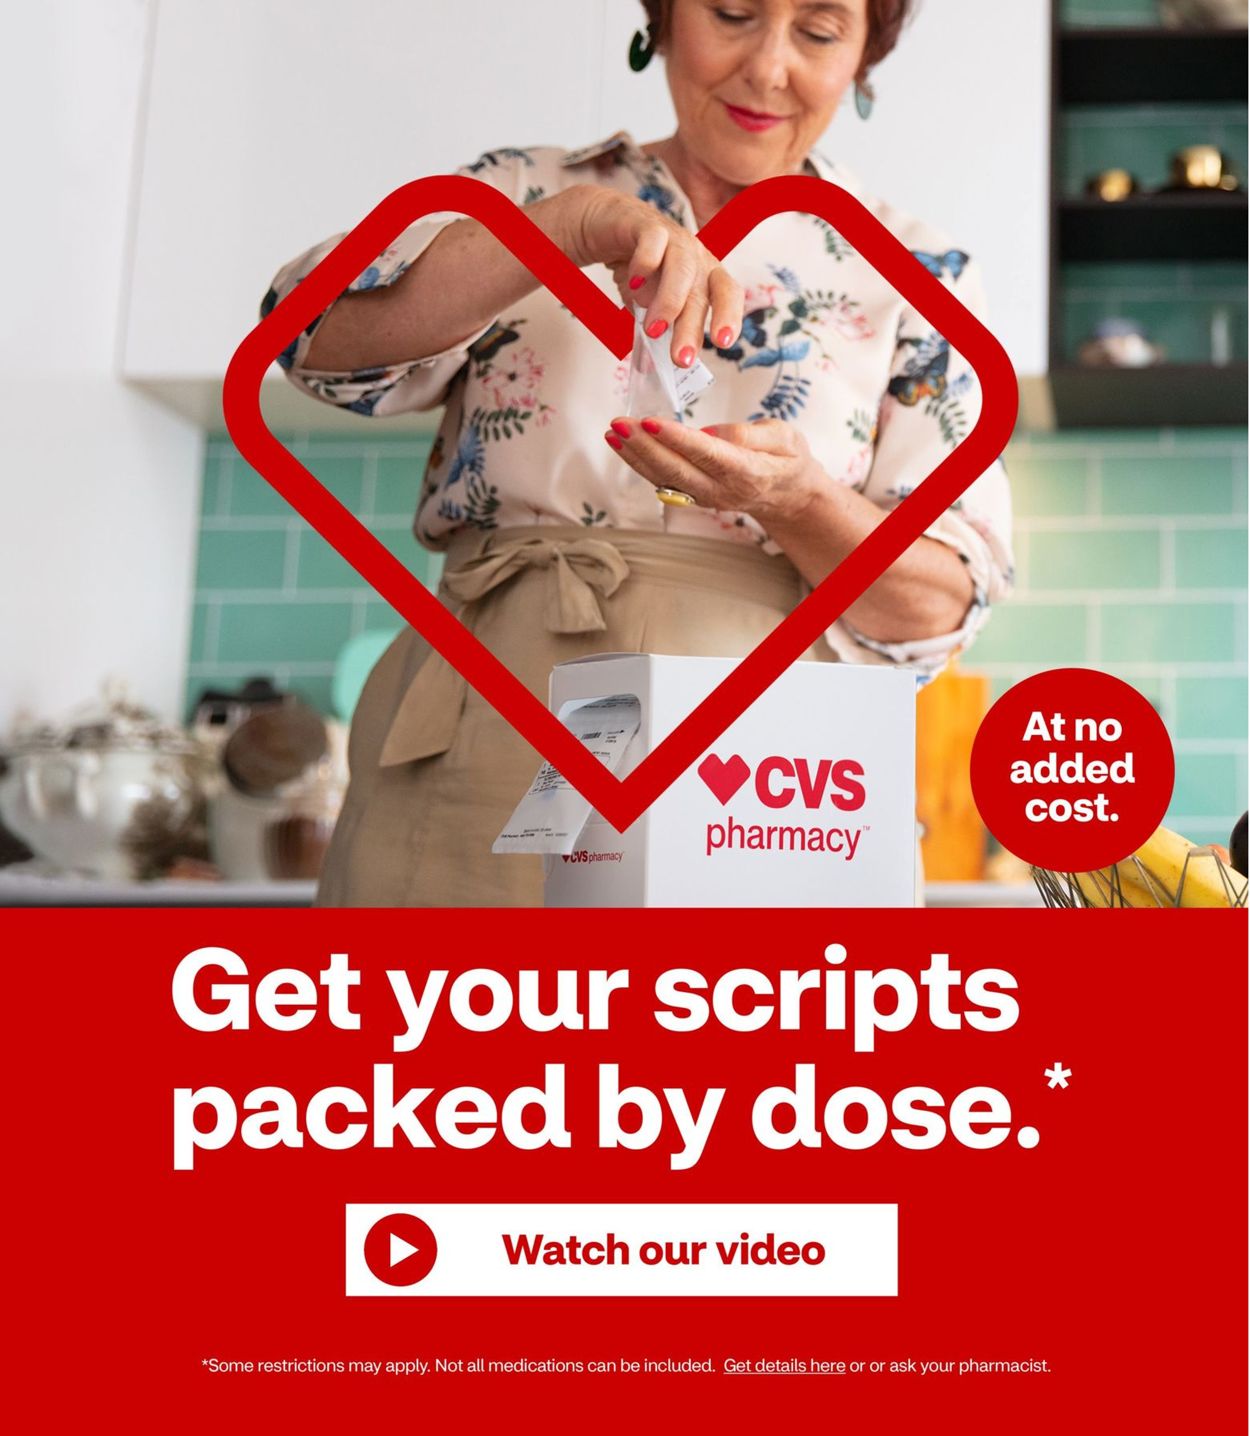 CVS Pharmacy Ad from 03/15/2020